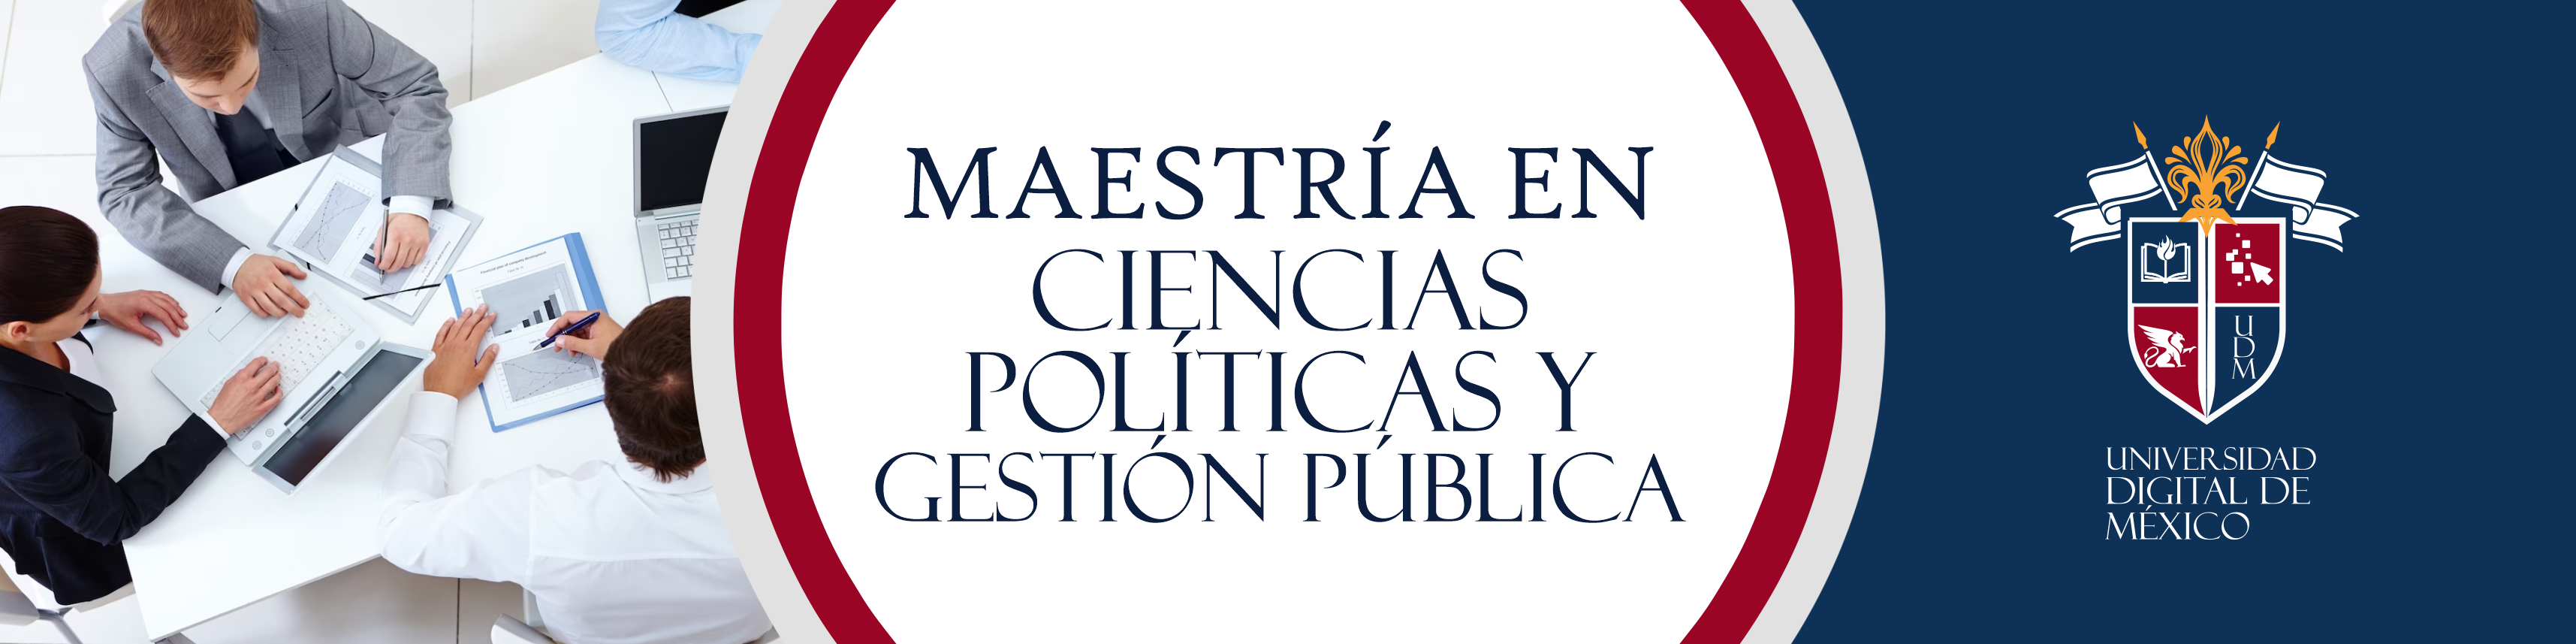 Maestría en Ciencias Políticas y Gestión Pública.